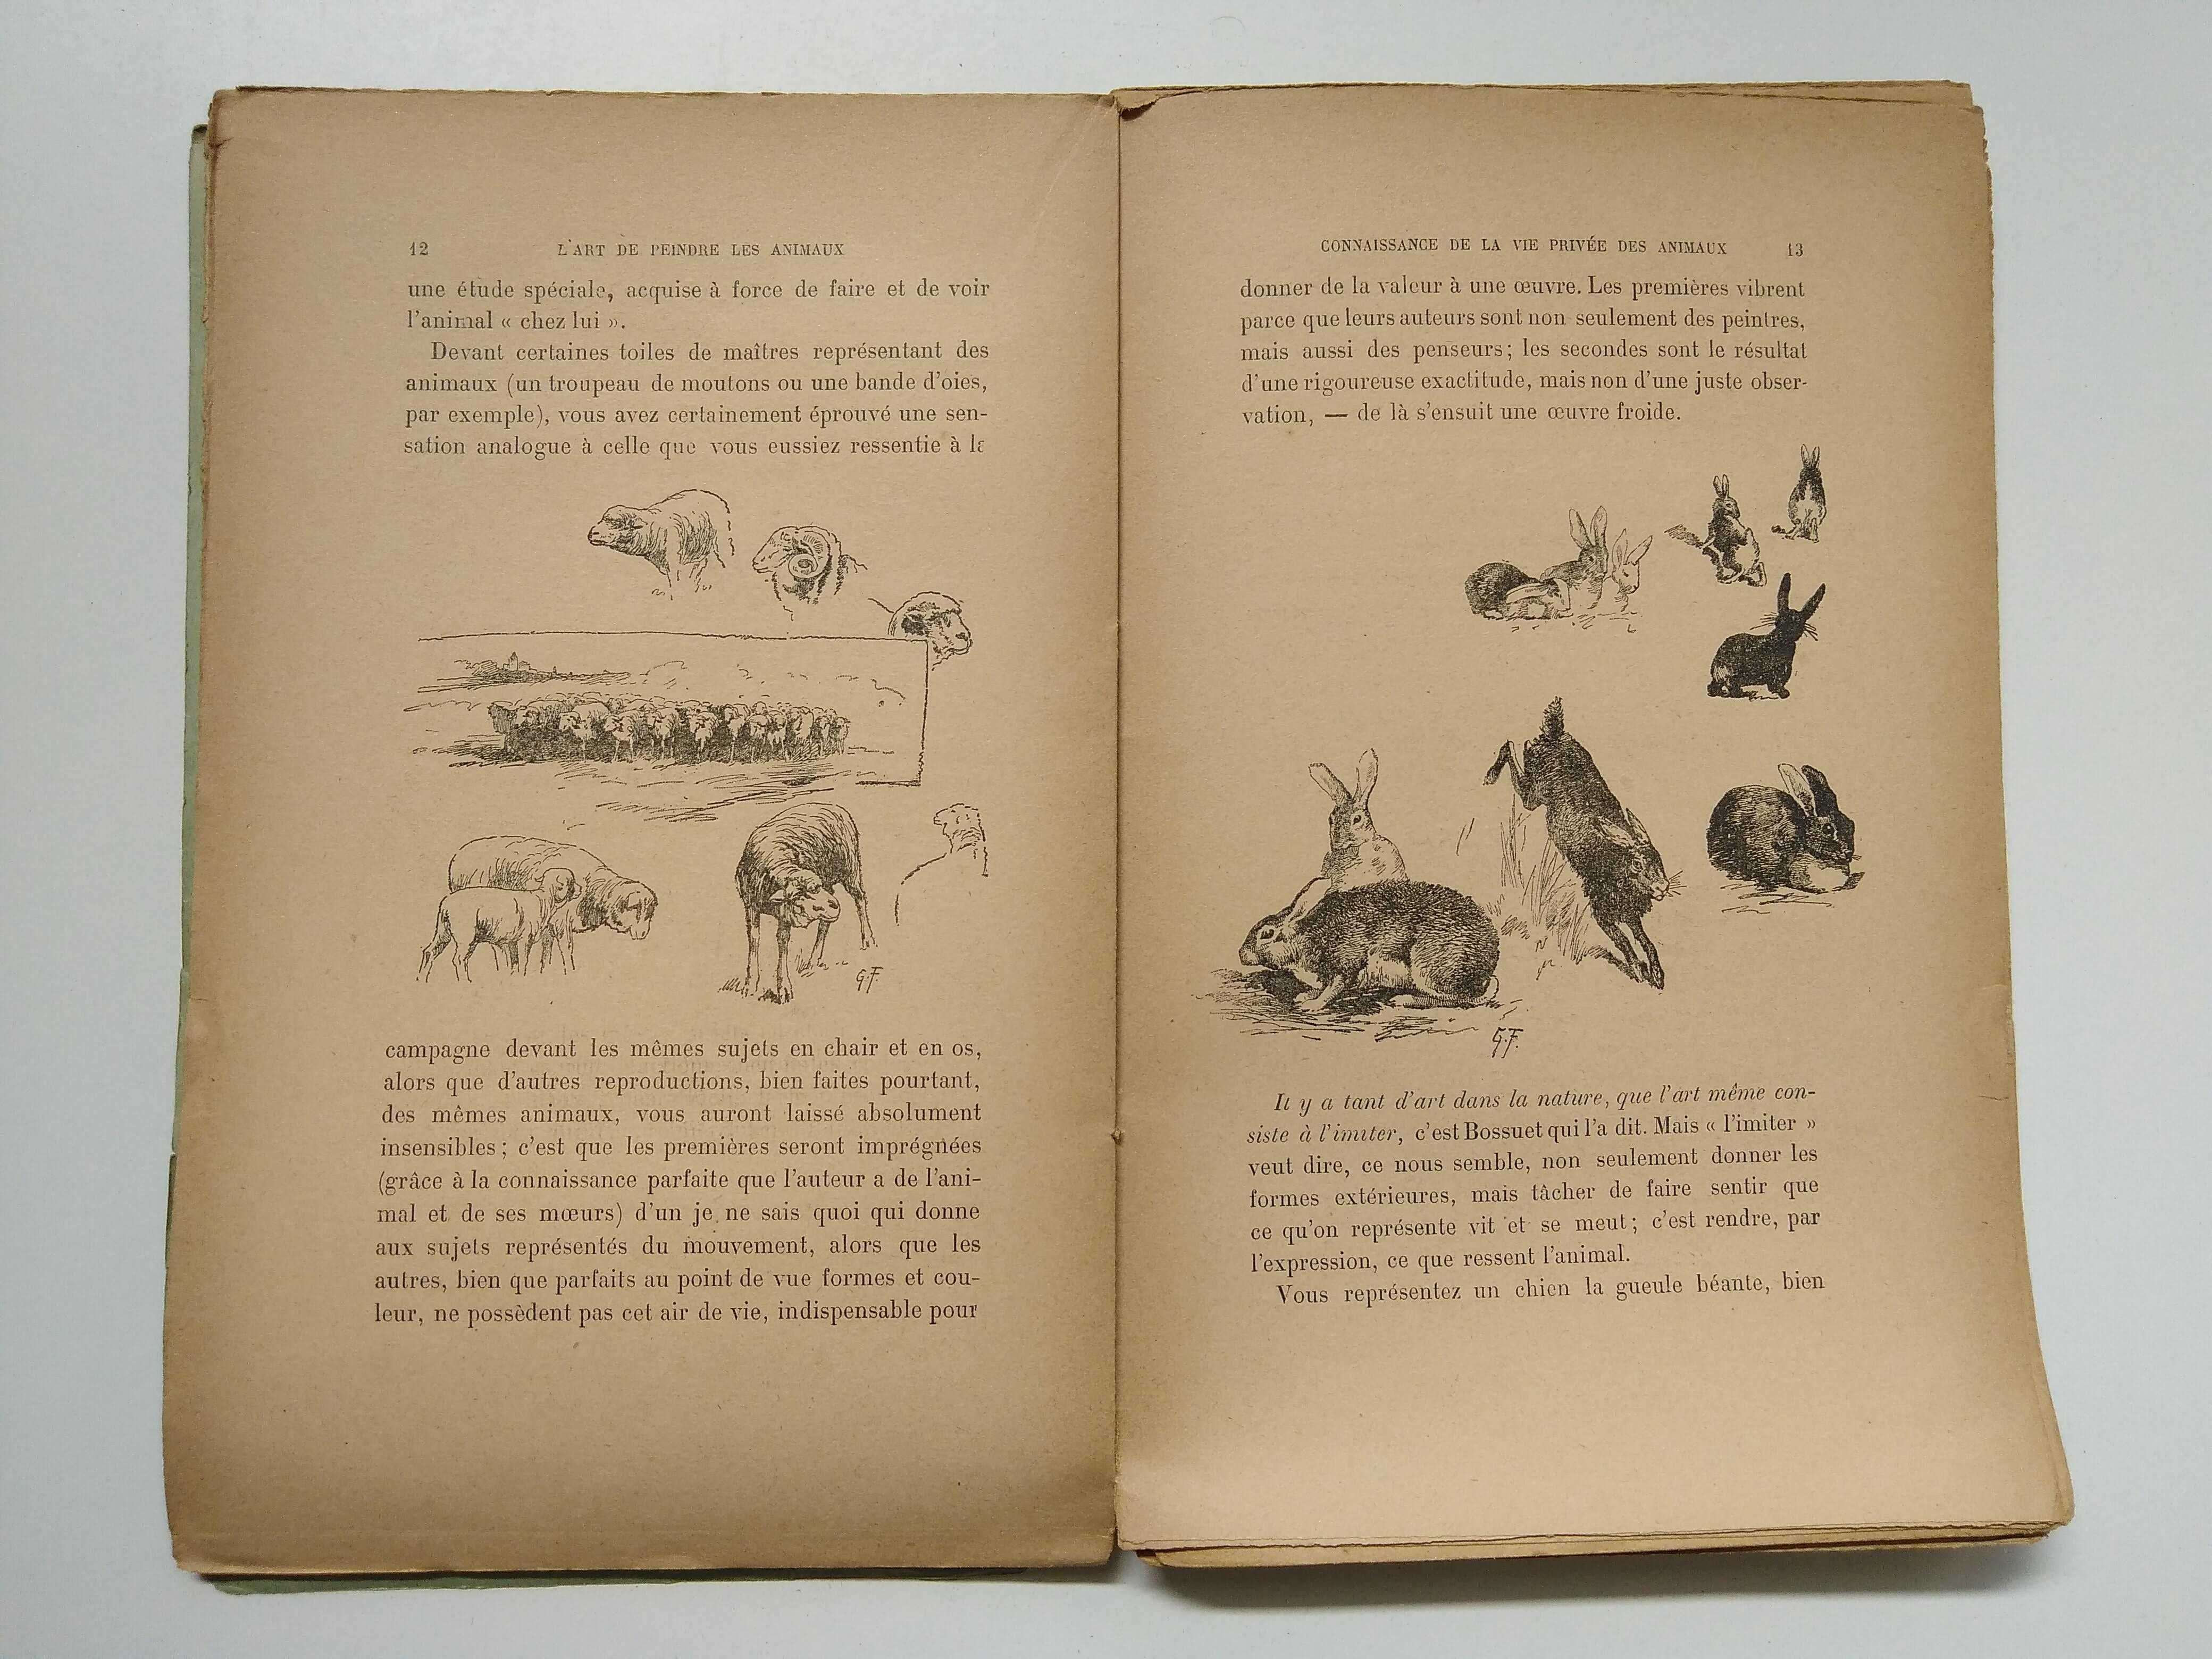 livro: "L'art de peindre les animaux a l'aquarelle" (1938)